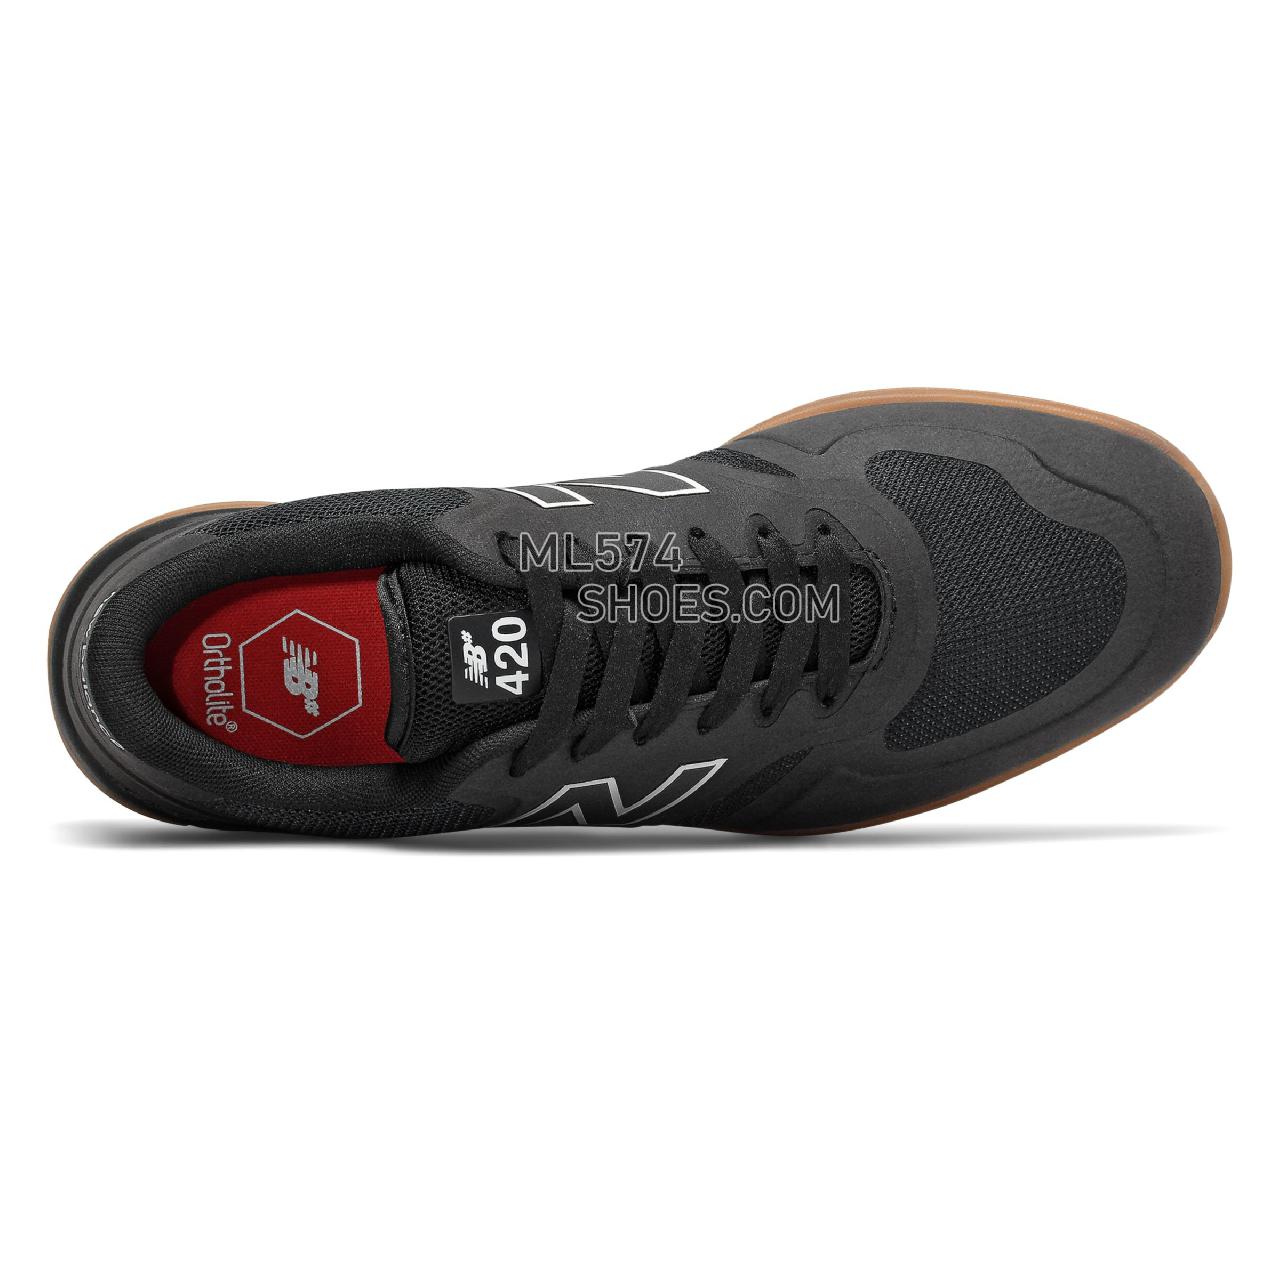 New Balance Numeric 420 - Men's NB Numeric Skate - Black with Gum - NM420GUM